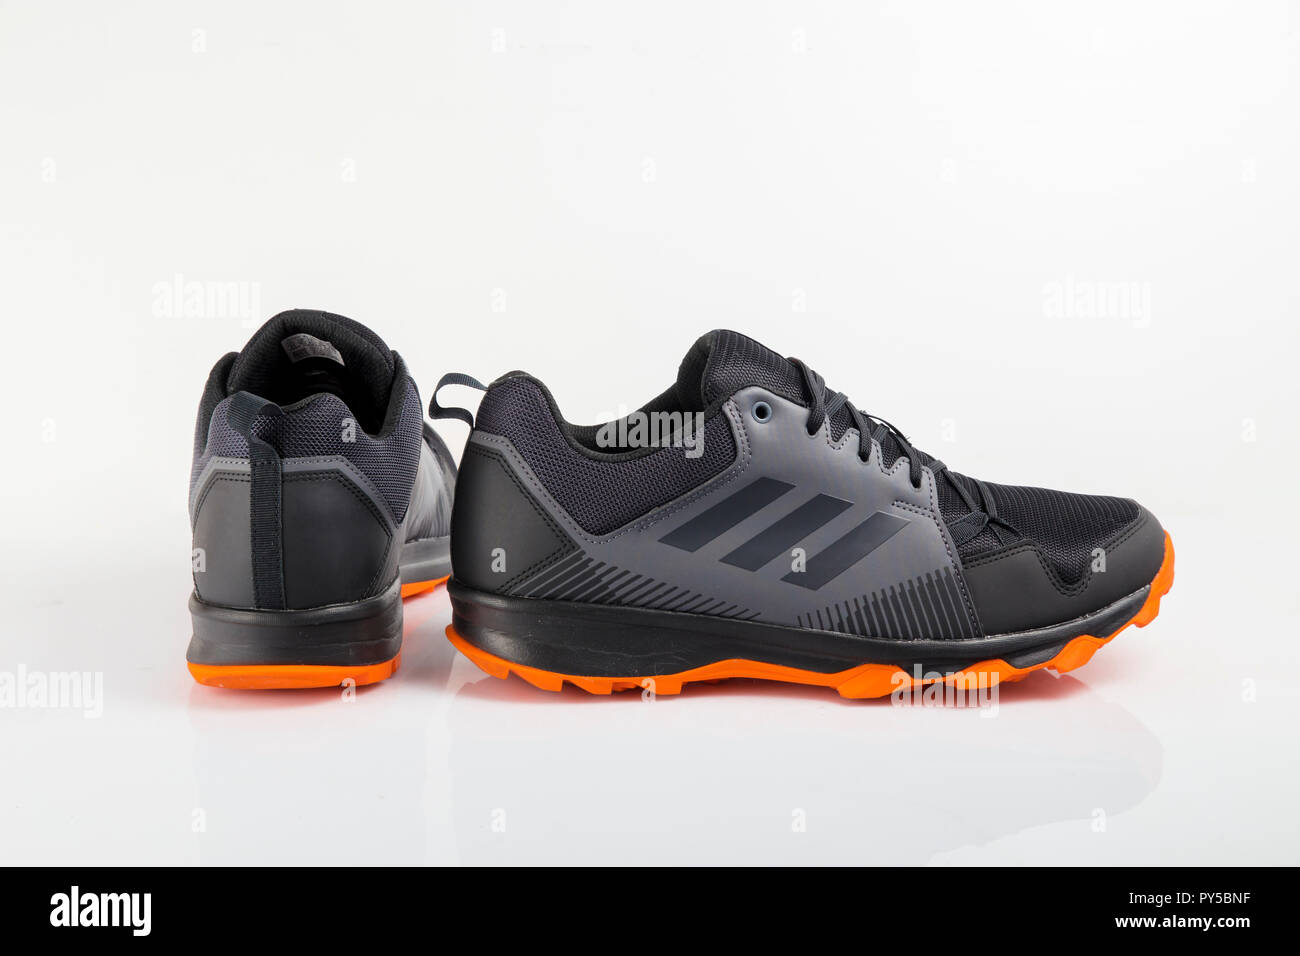 Afife, Portugal - Oktober 24, 2018: adidas Running Schuhe. Adidas, multinationales Unternehmen. Auf weiß isoliert. Produkt Fotos Stockfoto